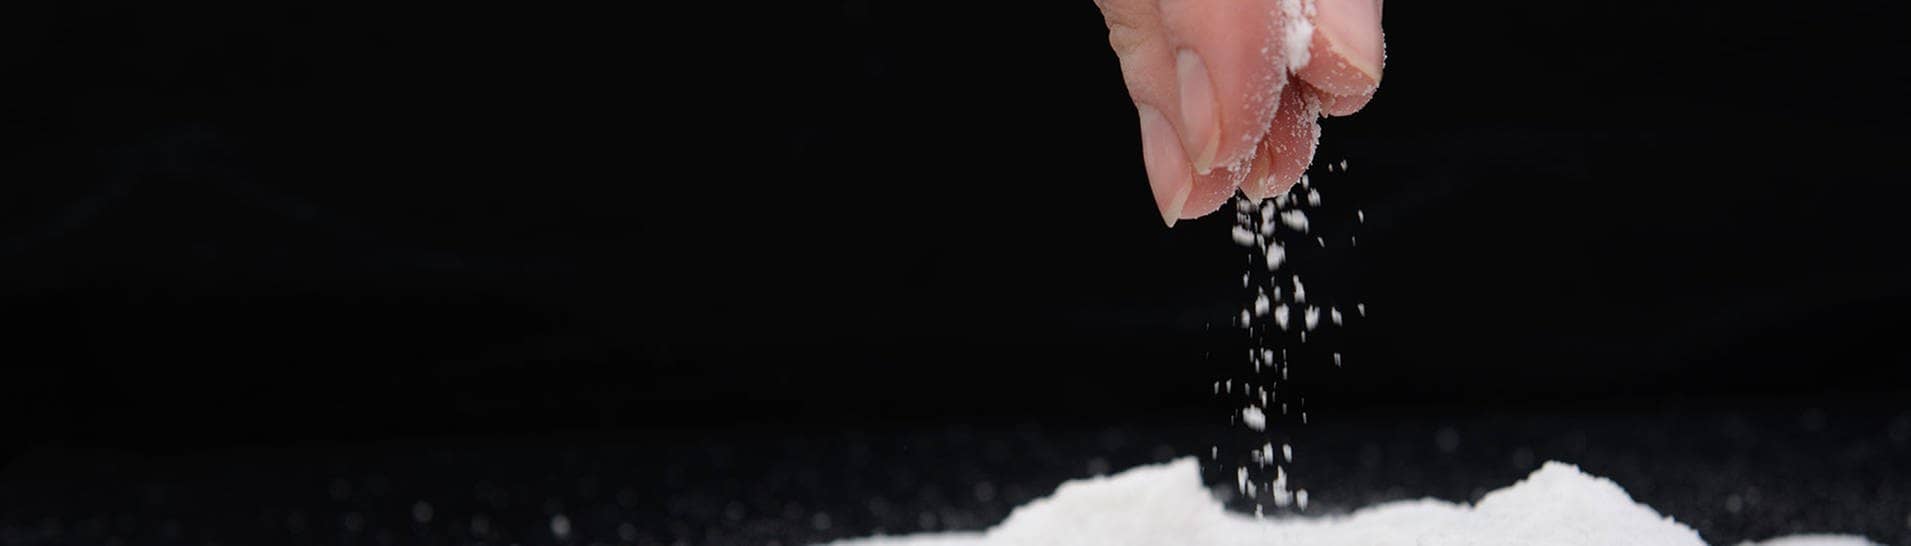 Hand die eine Prise Salz auf eine schwarze Flaeche streut  (Foto: Adobe Stock / yuryastankov)